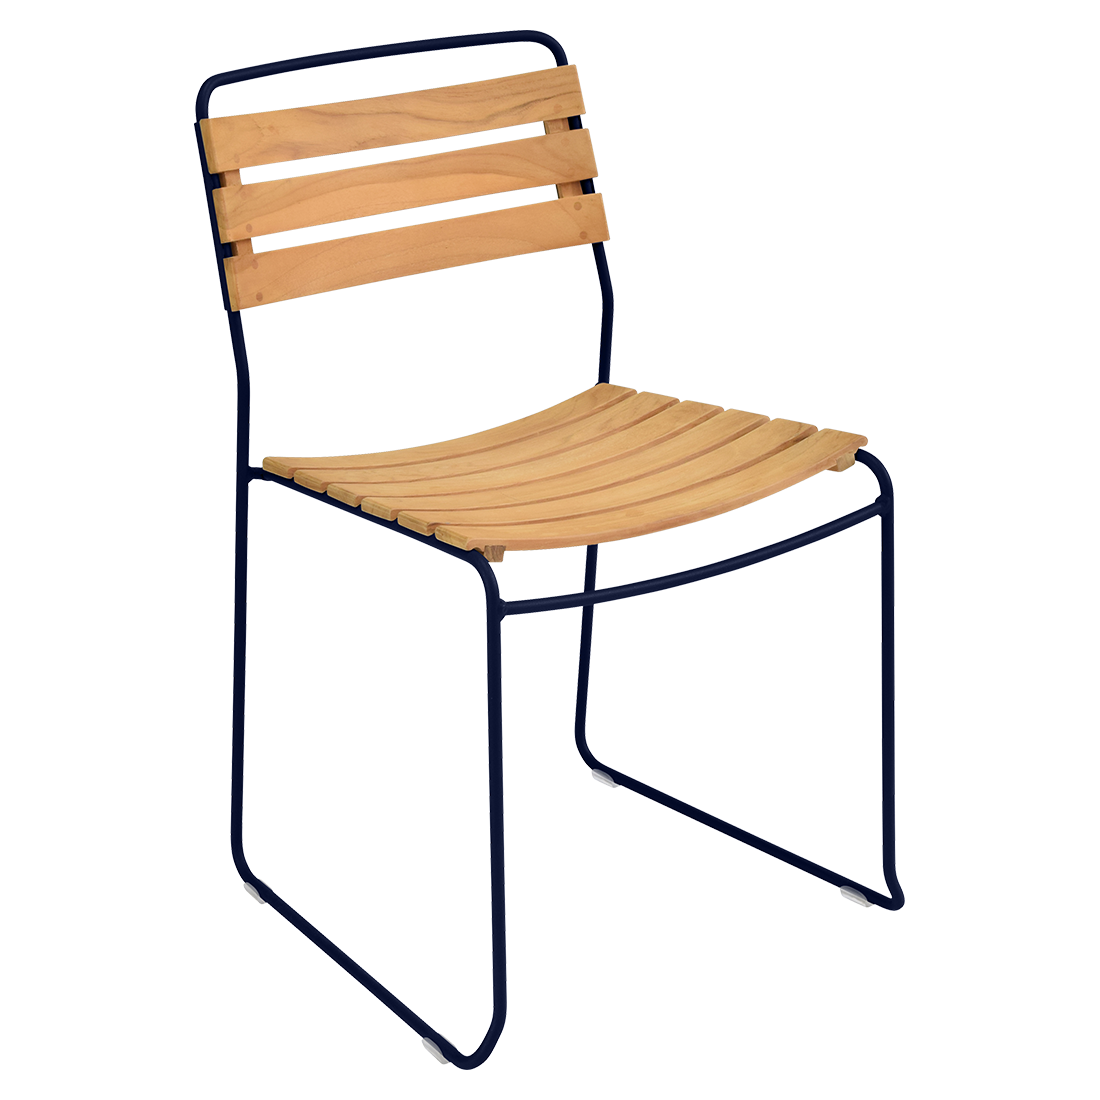 chaise surprising, chaise fermob, chaise bois et metal, chaise de jardin, chaise design, chaise bois et bleu, guggenbichler